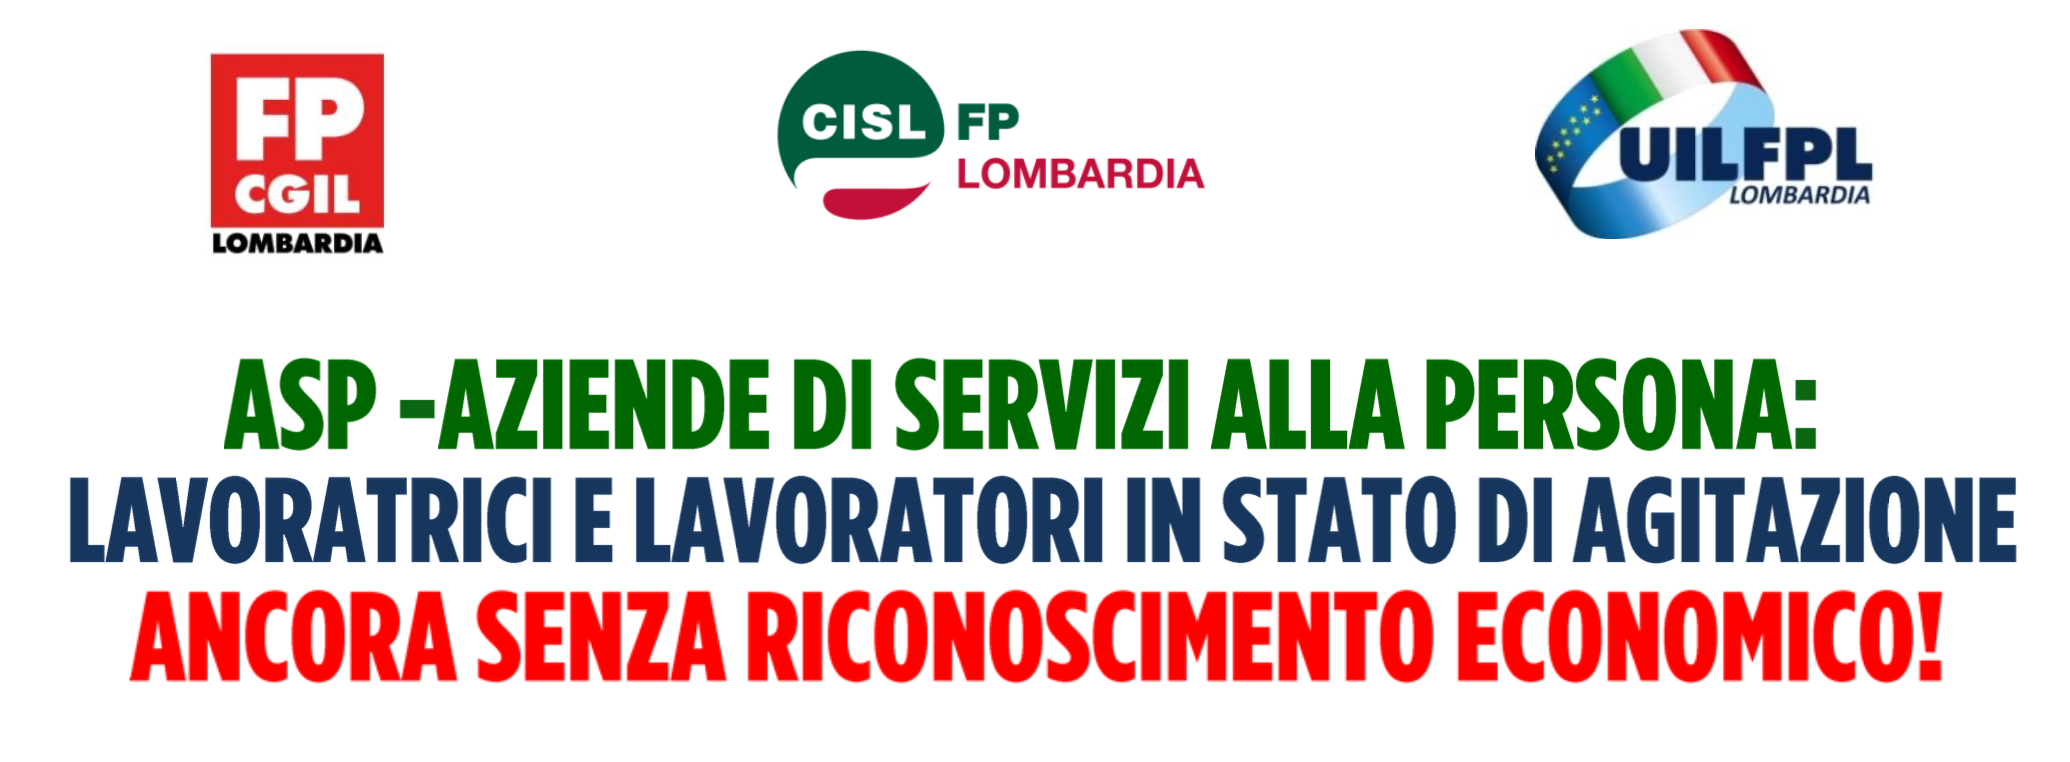 Le segreterie regionali di UIL FPL - CGIL FP - FP CISL dichiarano lo stato di agitazione del personale ASP di Regione Lombardia